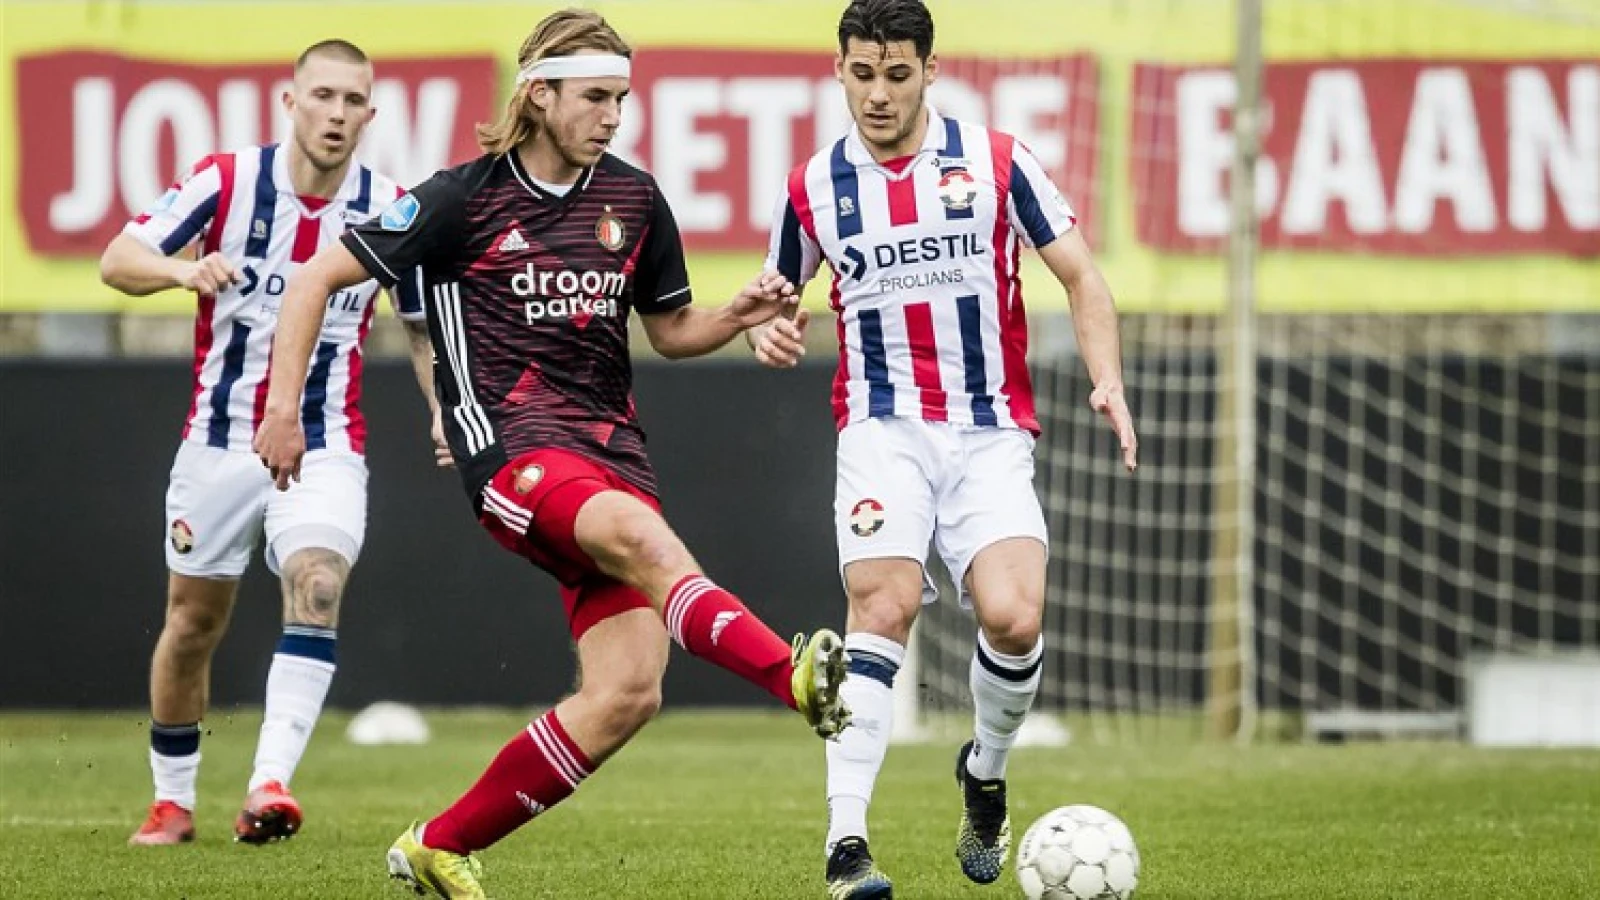 Jeugdspeler De Mooij laat Feyenoord achter voor droom buiten voetbal